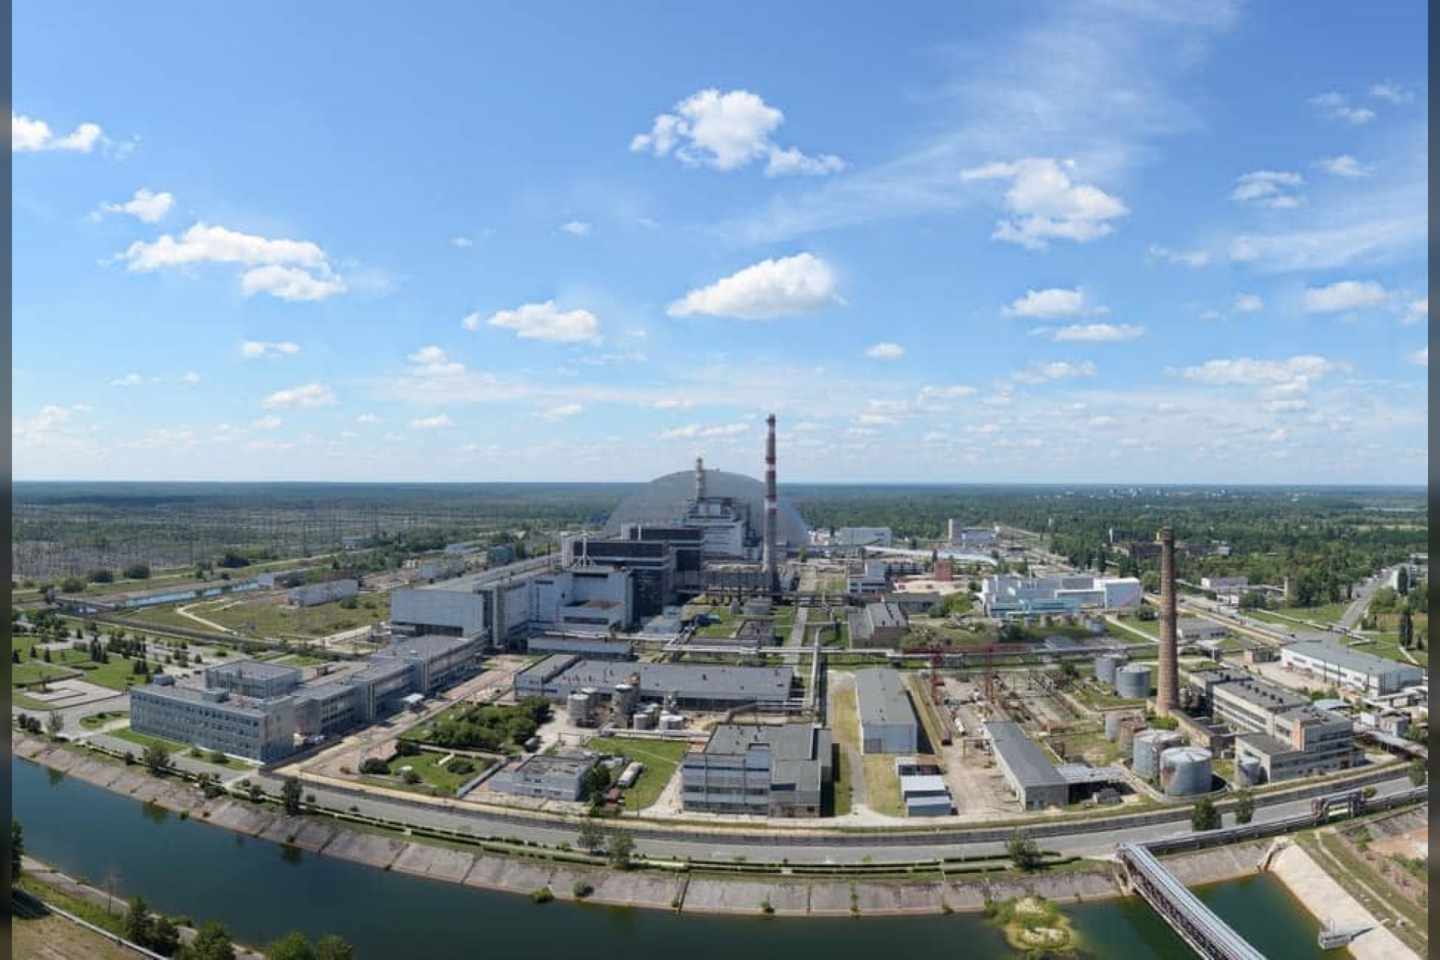  Černobylio Atominės elektrinės oficialioje „Facebook“ paskyroje teigiama, kad branduolinėje jėgainėje pagaliau įvykdyta dalinė personalo rotacija.<br> Černobylio AE nuotr.